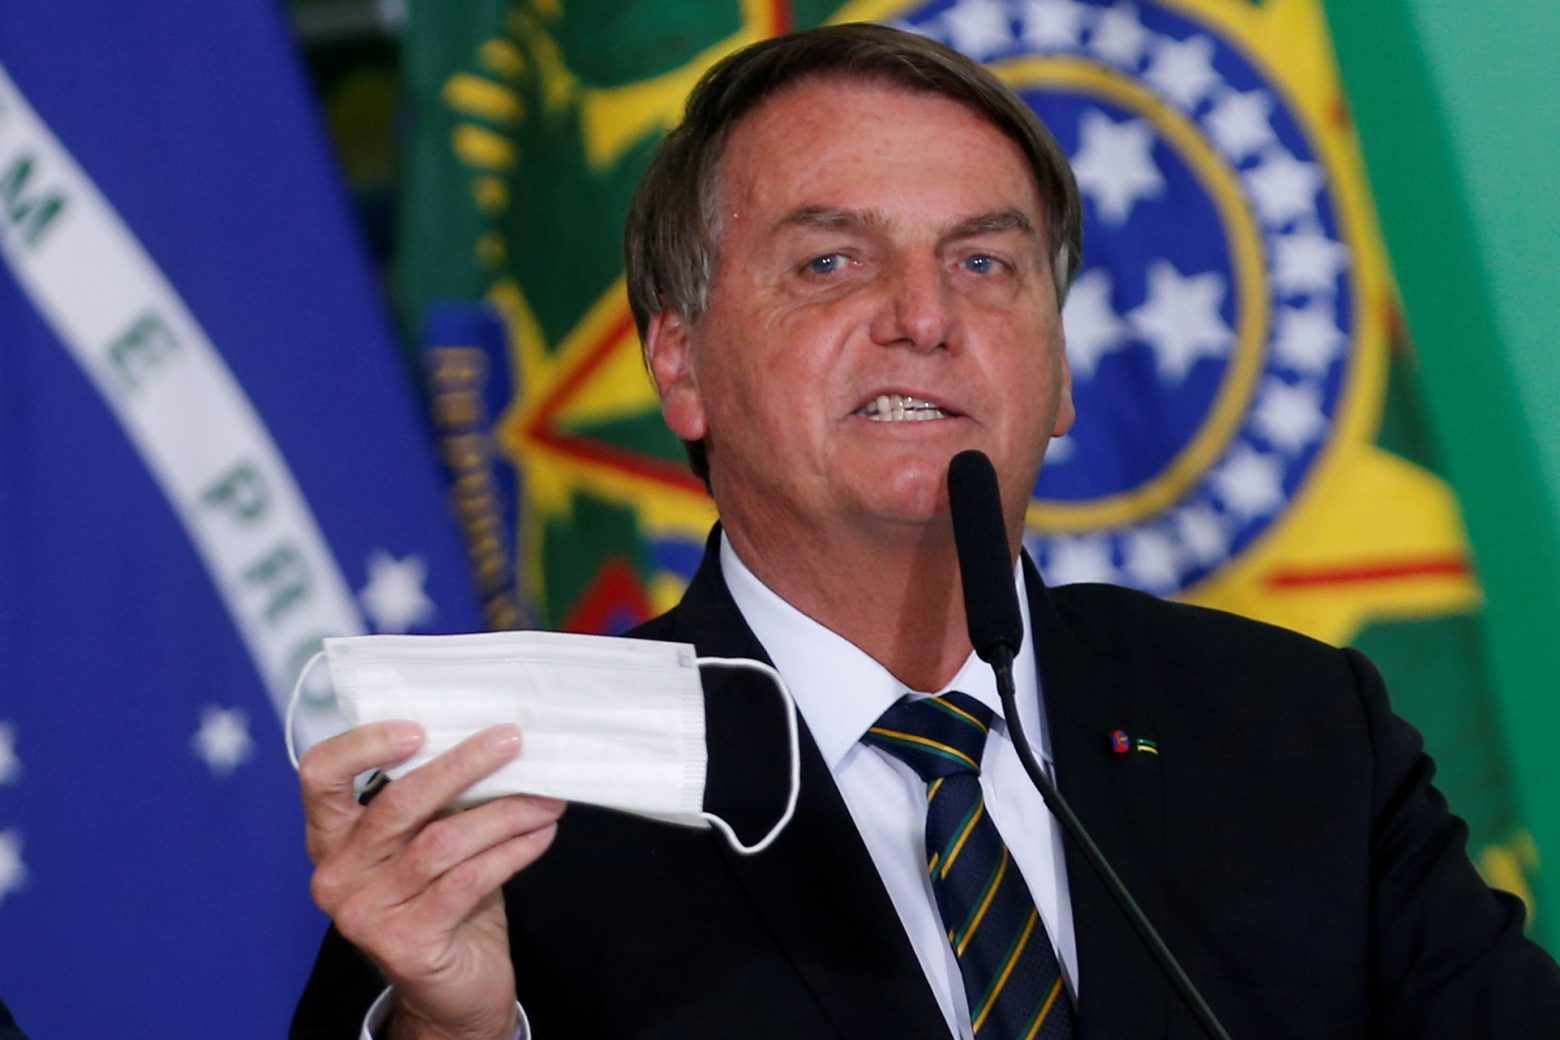 Βραζιλία - Ο Μπολσονάρο δεν θα εμβολιάσει την 11χρονη κόρη του - Συνεχίζει να προκαλεί